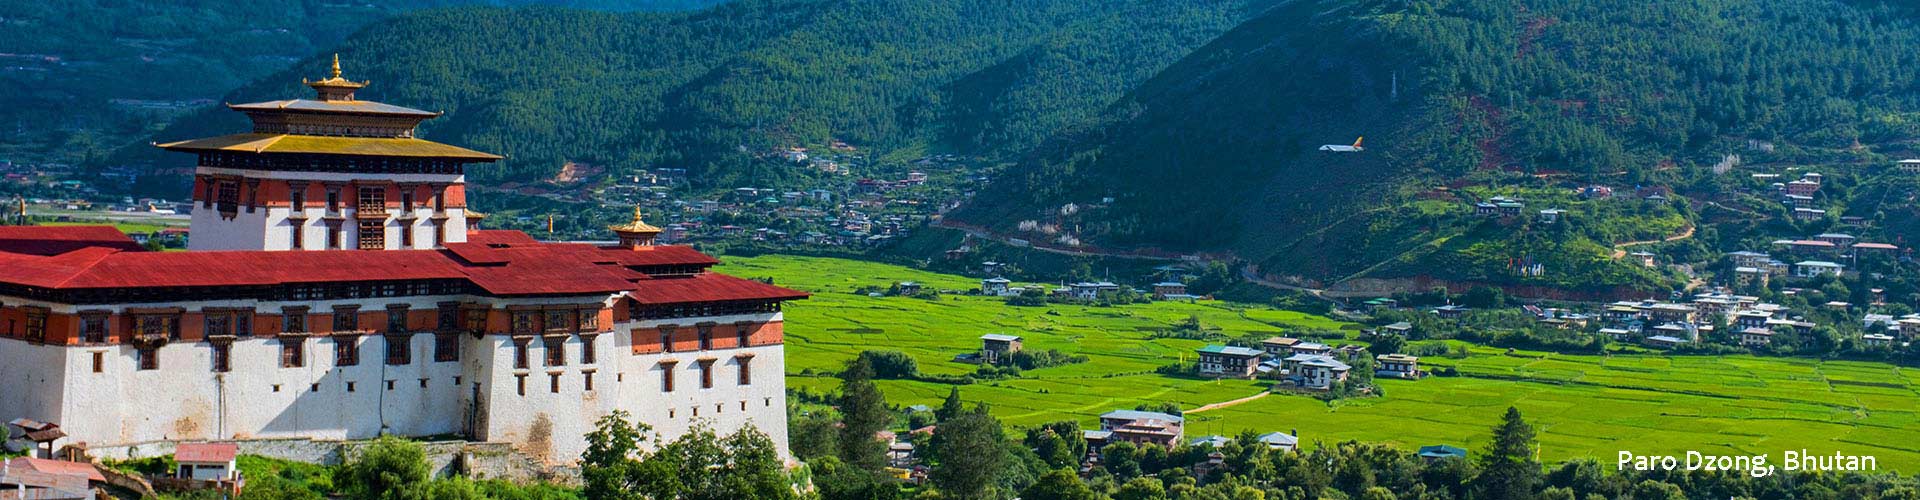 Bhutan Hiking Tours: 10 Best Bhutan Trekking Tours